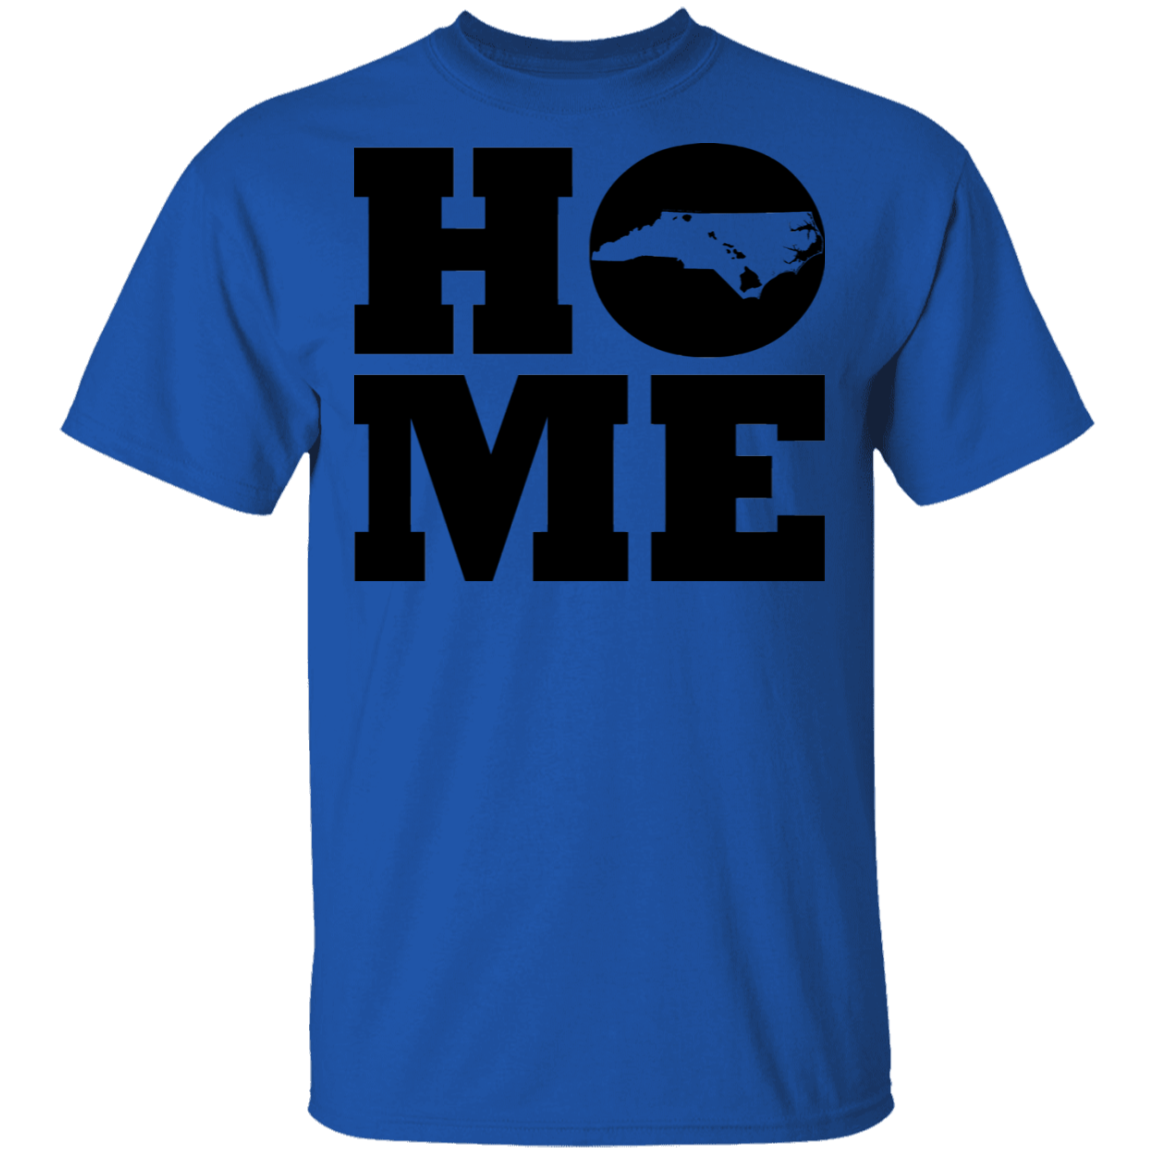 Home Roots Hawai'i and North Carolina T-Shirt